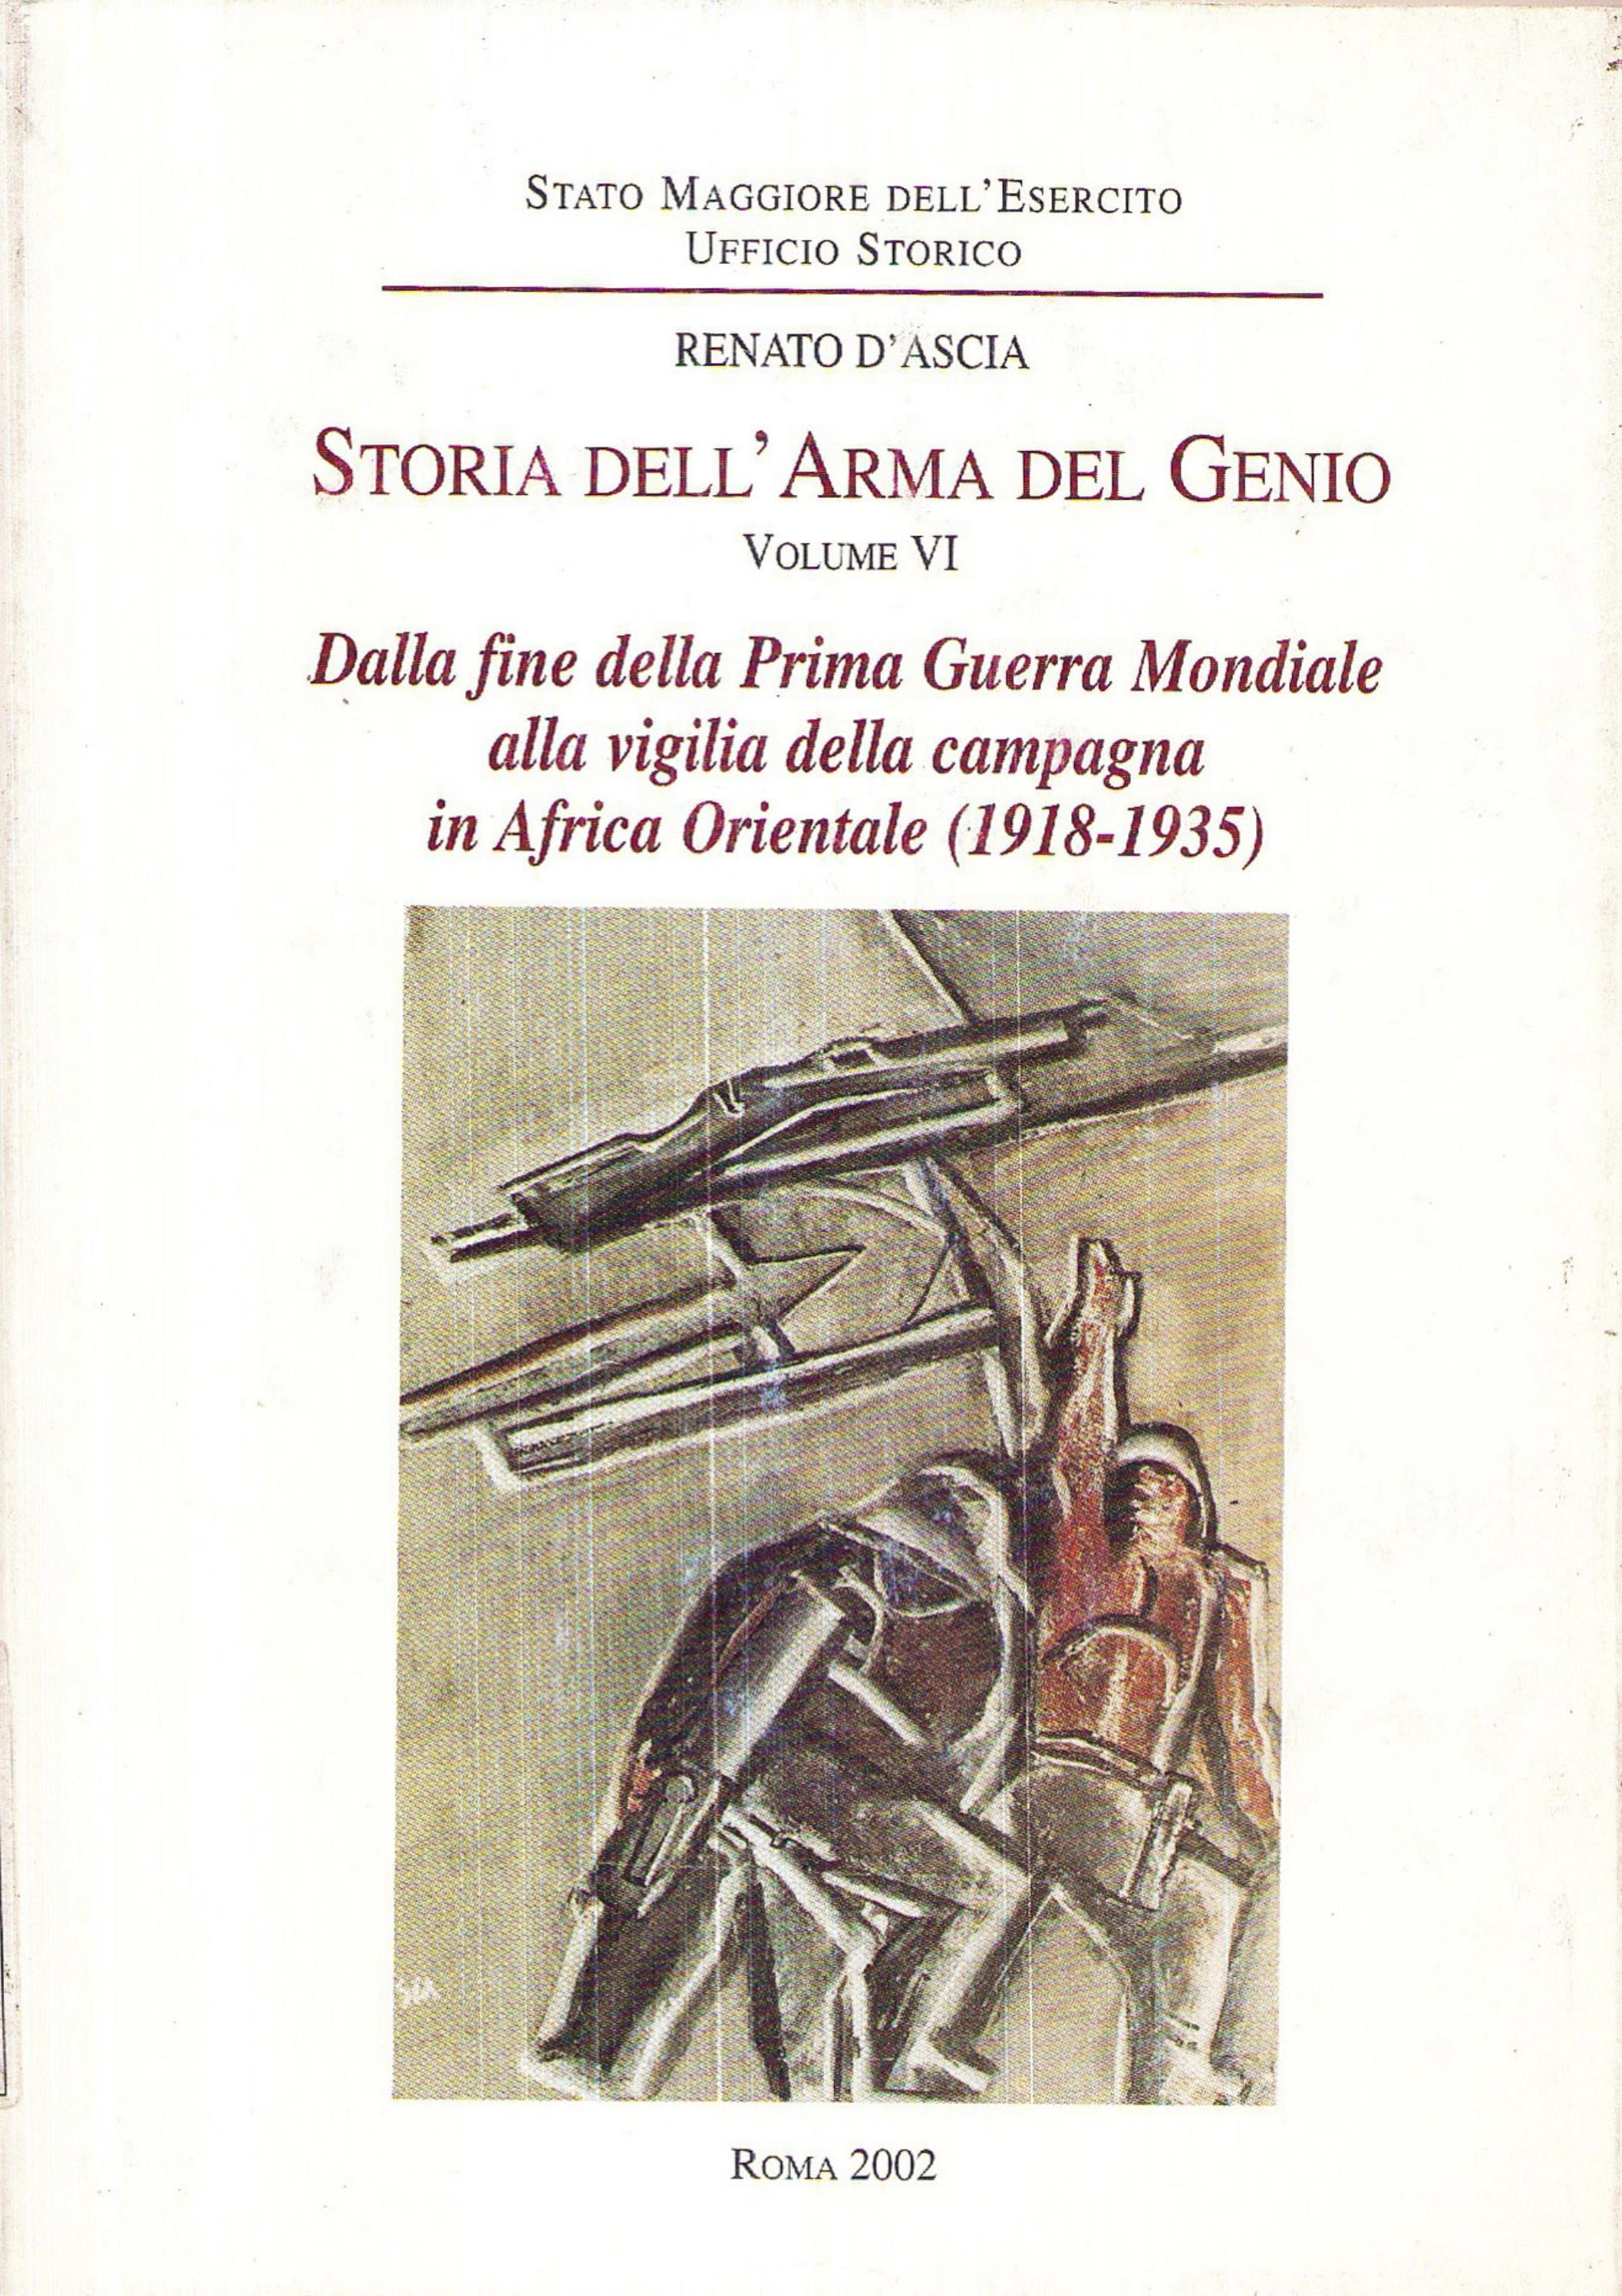 STORIA DELL'ARMA DEL GENIO VOLUME VI by Biblioteca Militare - Issuu